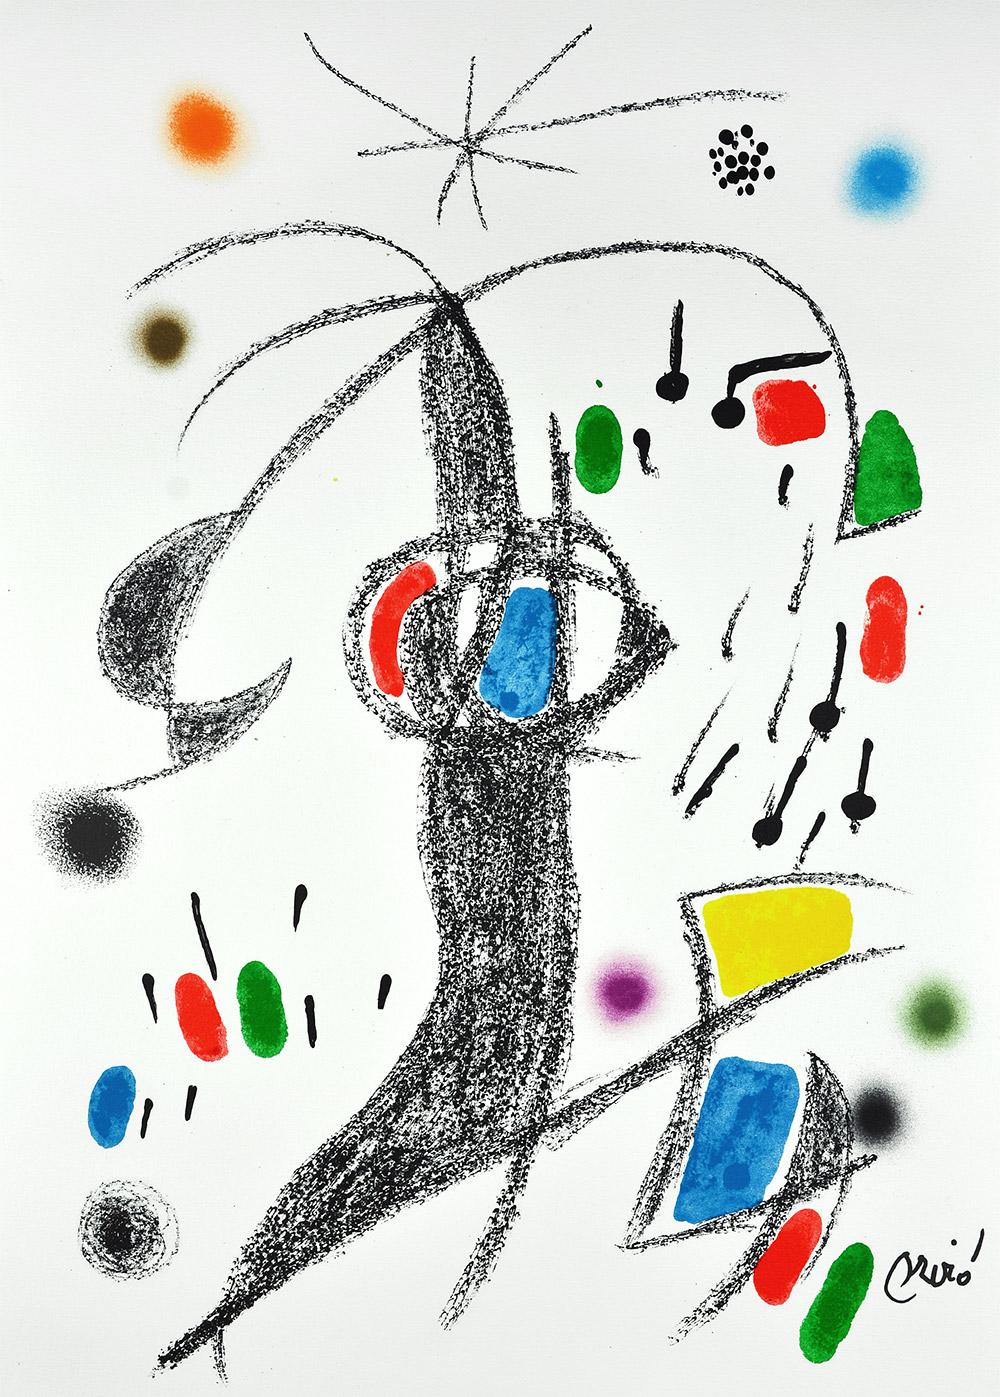 Joan Miró - Maravillas con variaciones acrósticas en el jardín de Miró XIX
Date de création : 1975
Support : Lithographie sur papier Gvarro
Édition : 1500
Taille : 49,5 x 35,5 cm
Observations : Lithographie sur plaque de papier Gvarro signée. Édité